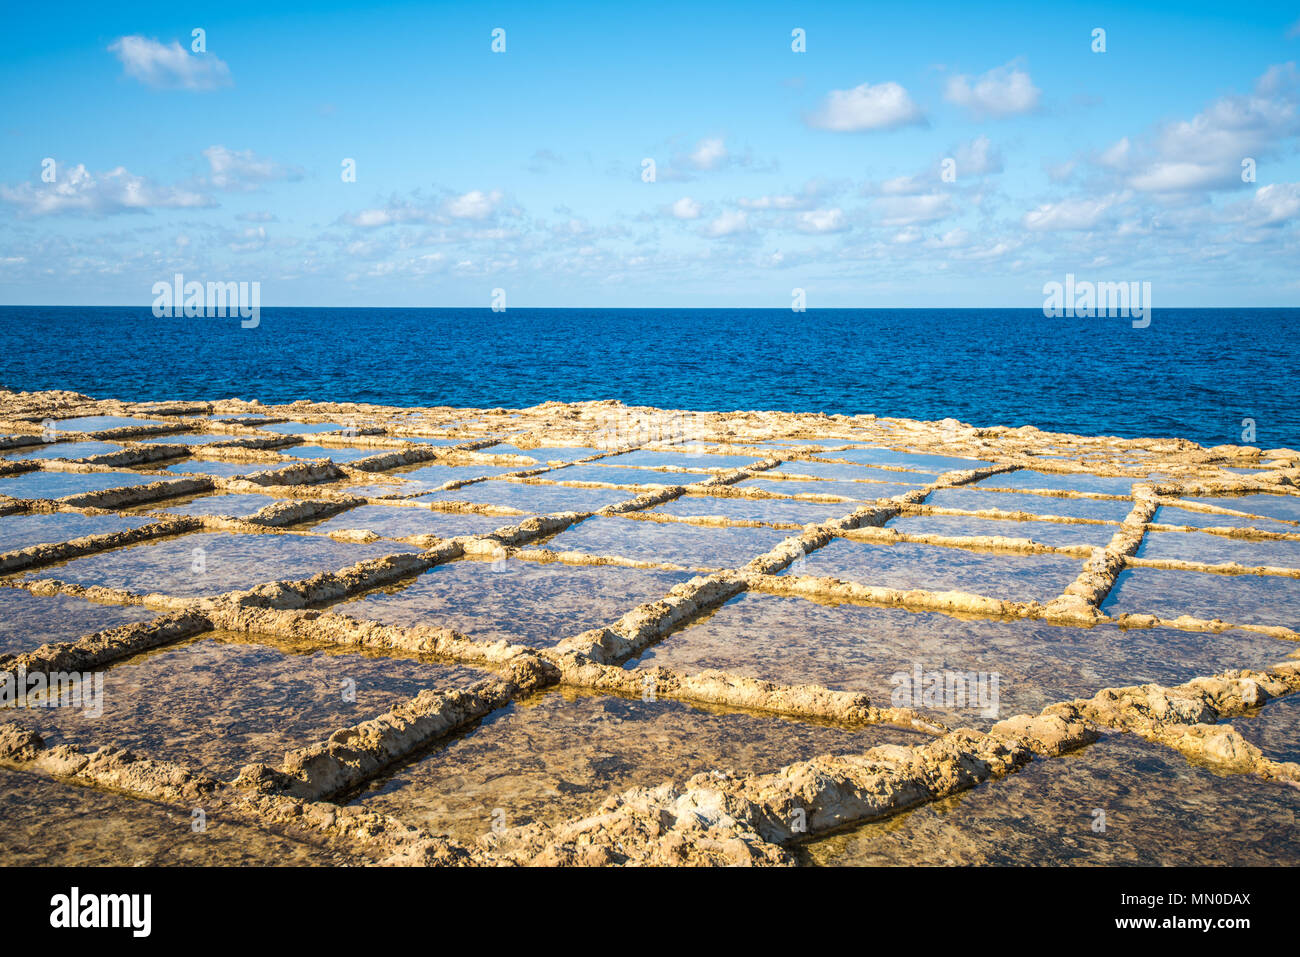 Salt evaporation ponds on Gozo island, Malta Stock Photo